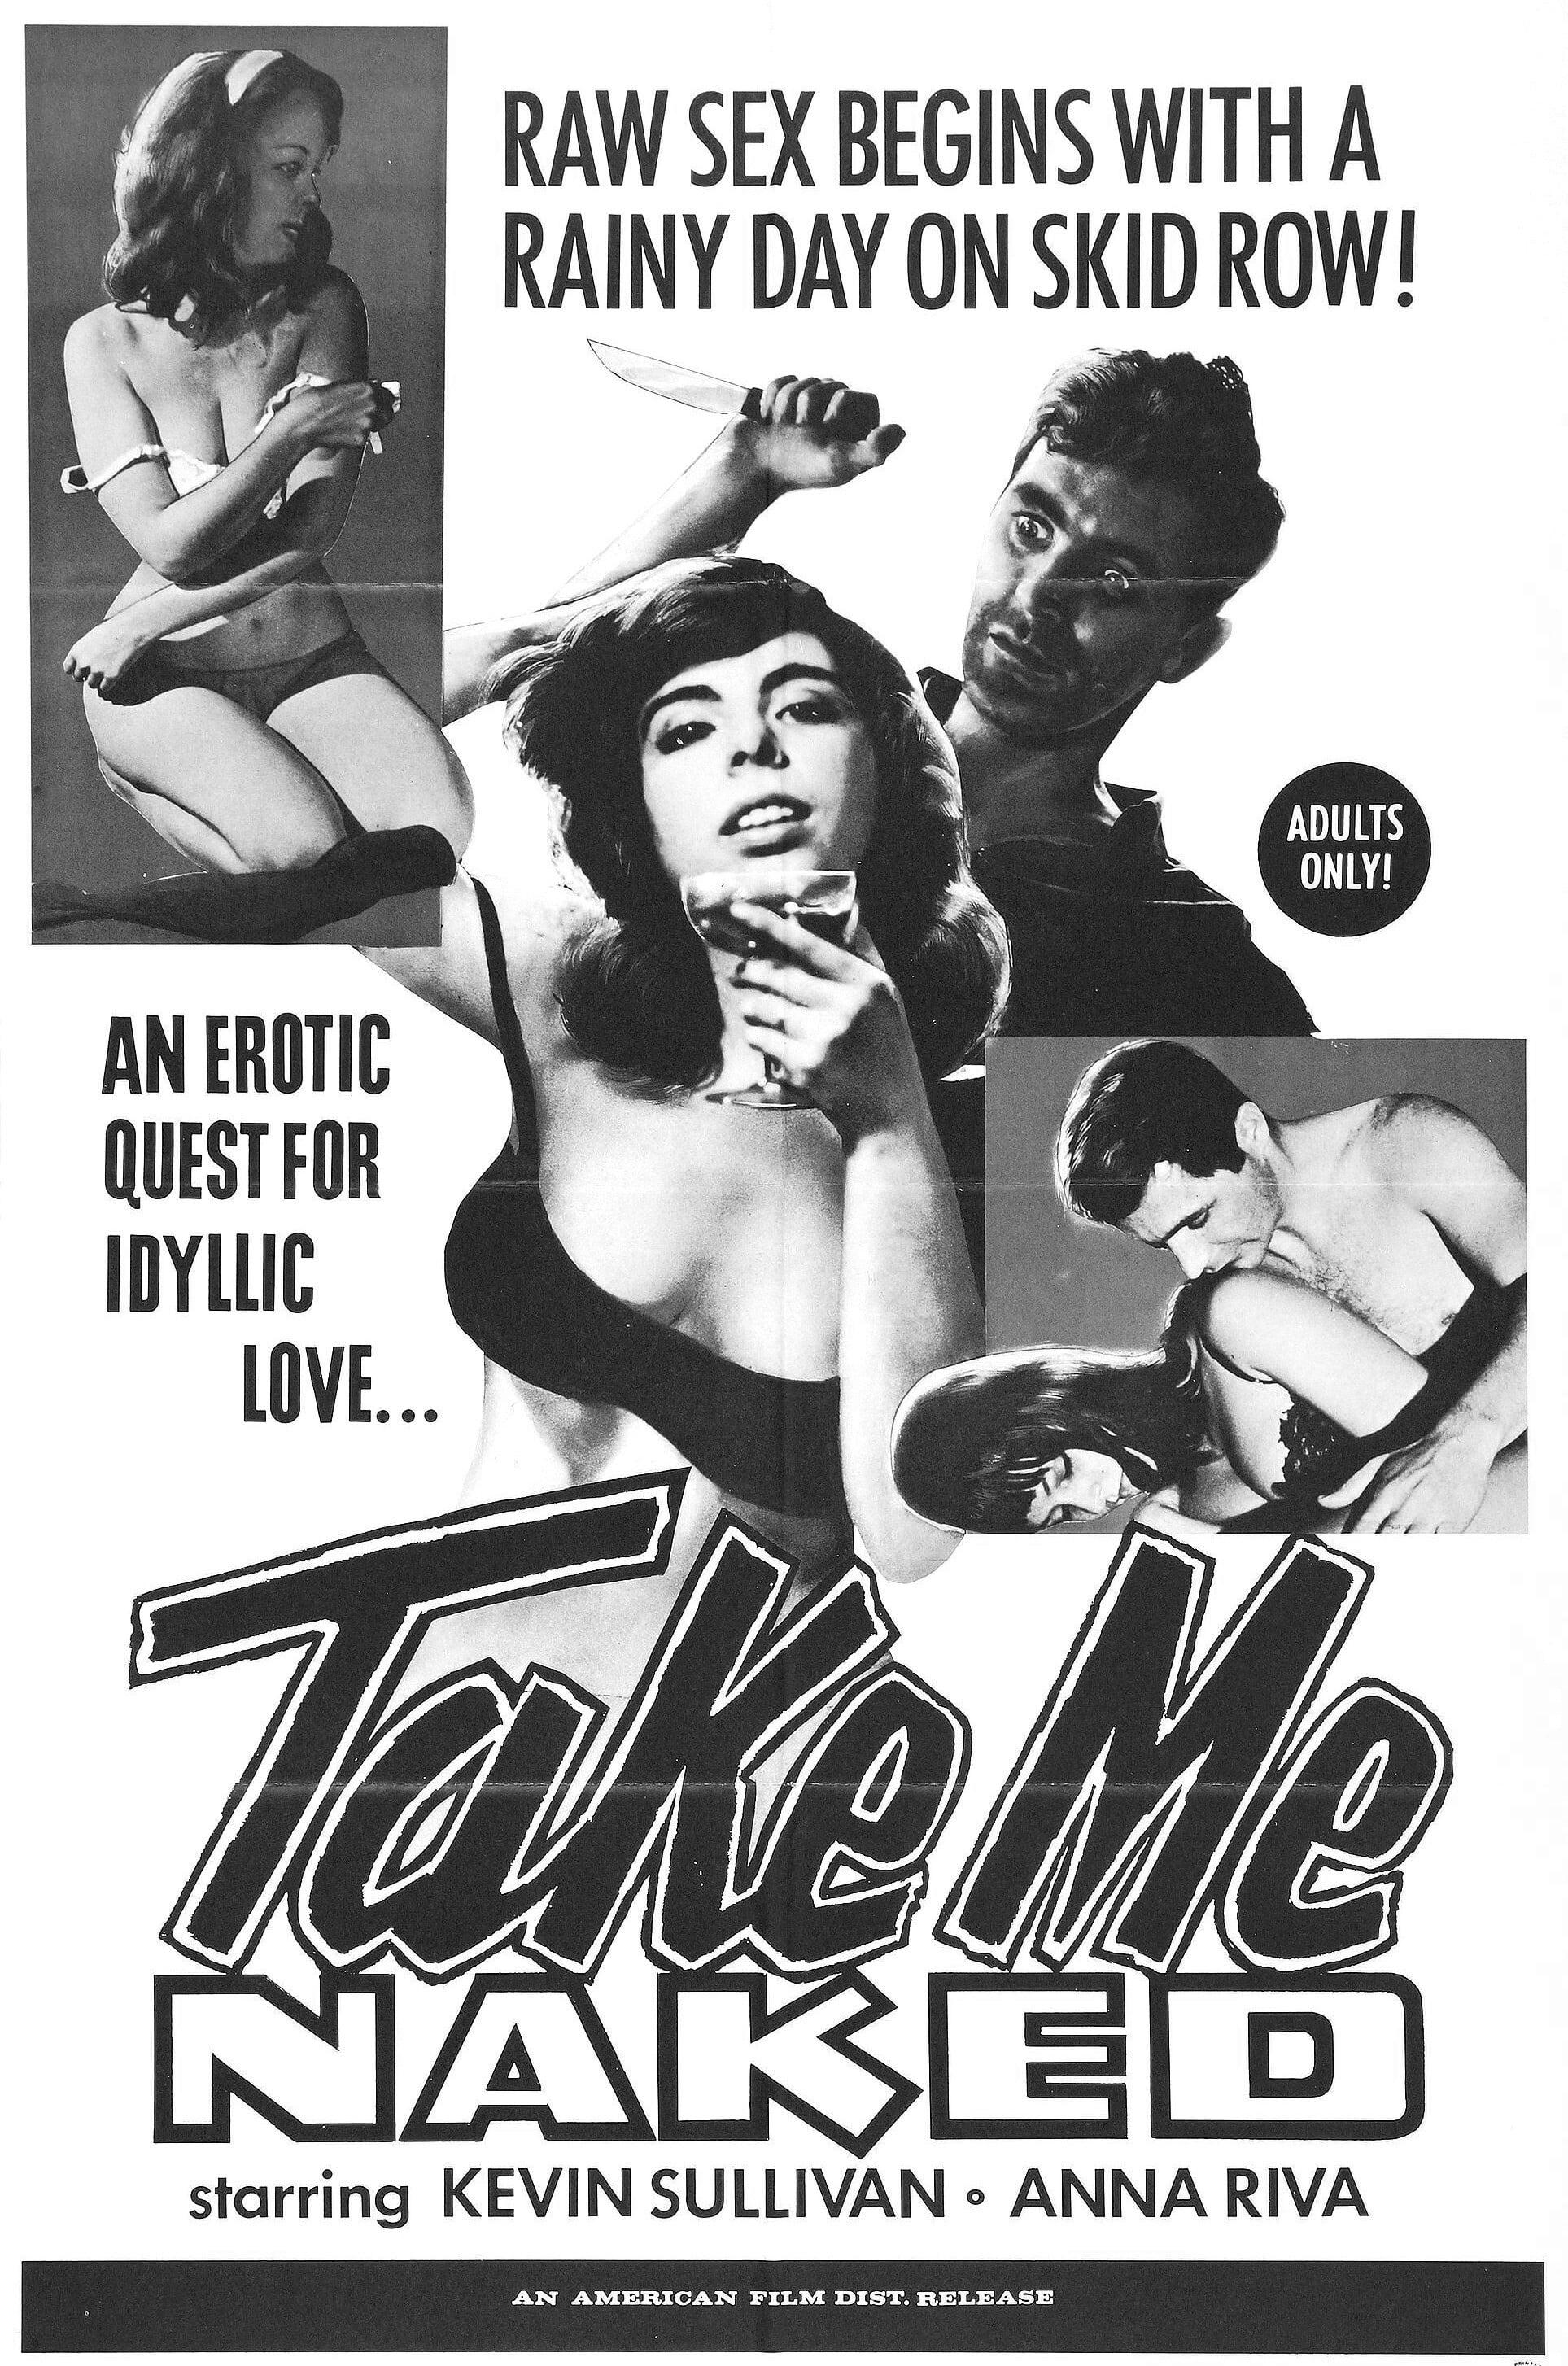 Take Me Naked poster